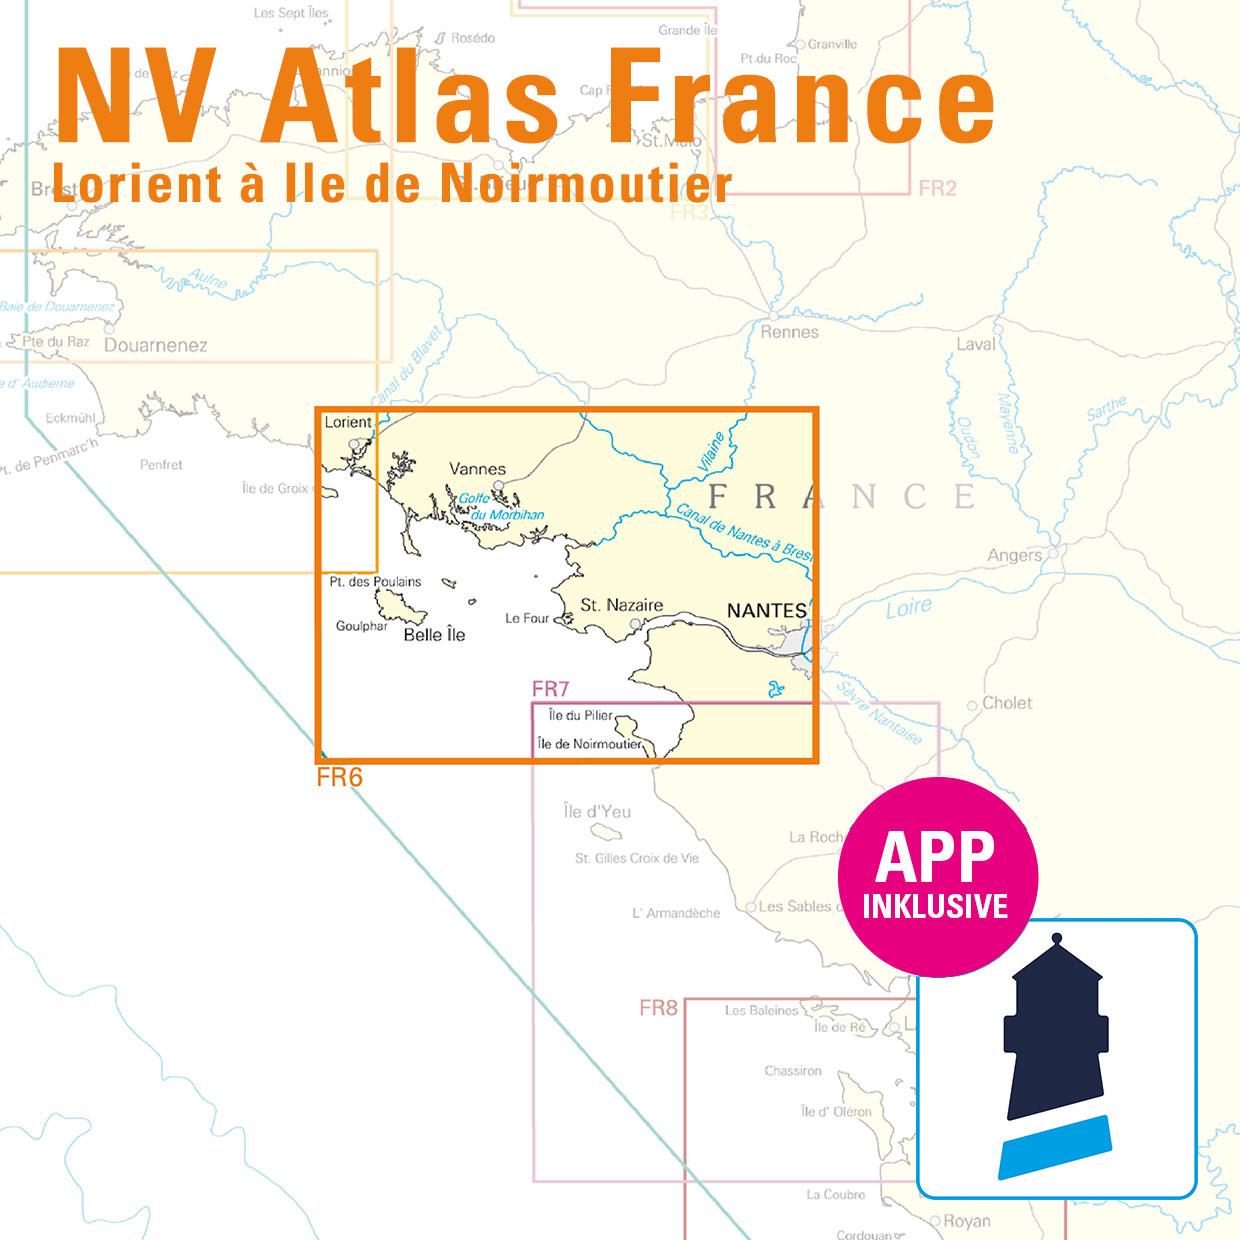 NV Charts France FR6 - Lorient à Île de Noirmoutier - Nantes